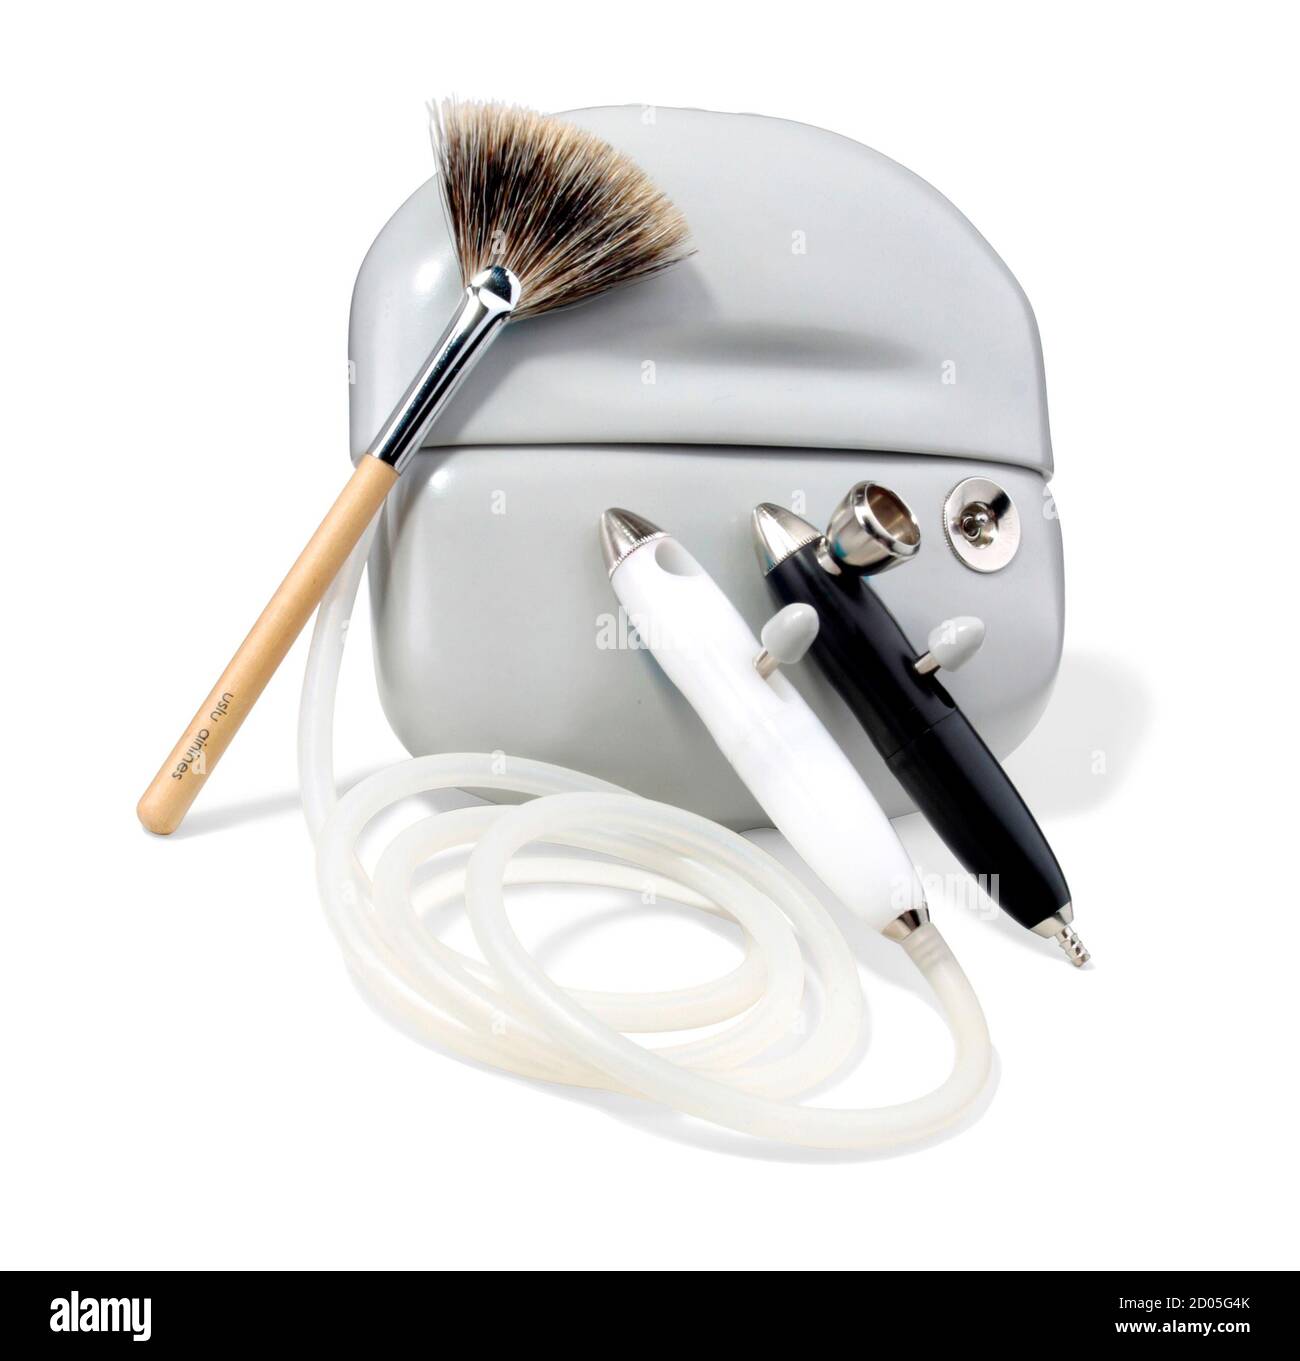 kit de maquillage pour aérographe uslu airbrush airbrush version 2.0 photographié sur un arrière-plan blanc Banque D'Images